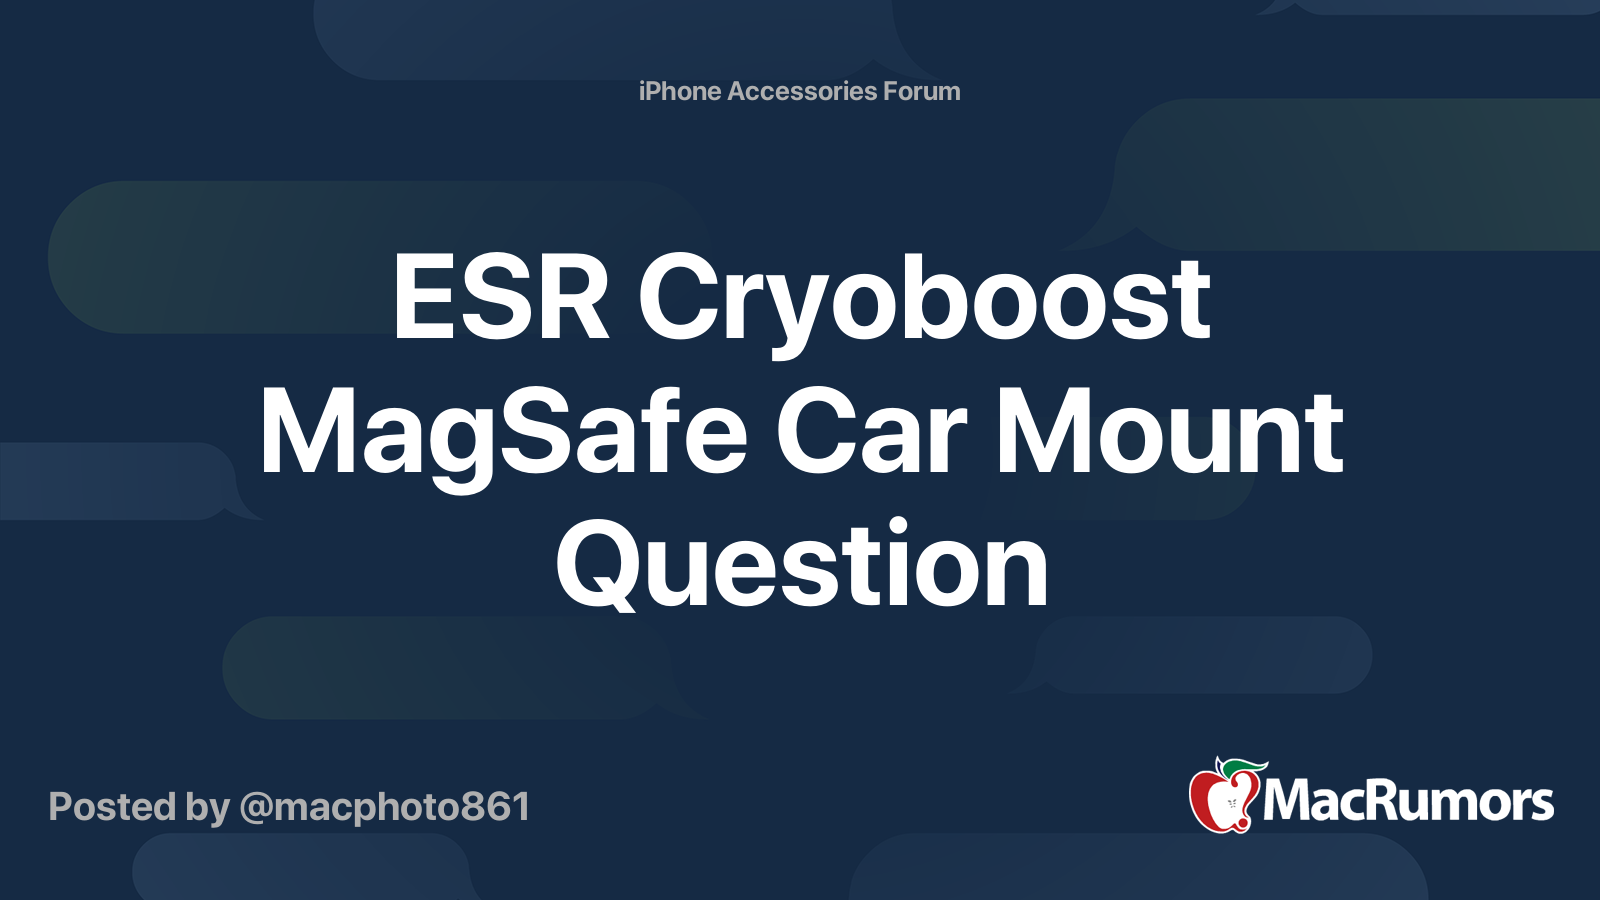 ESR Cryoboost MagSafe Car Mount Question